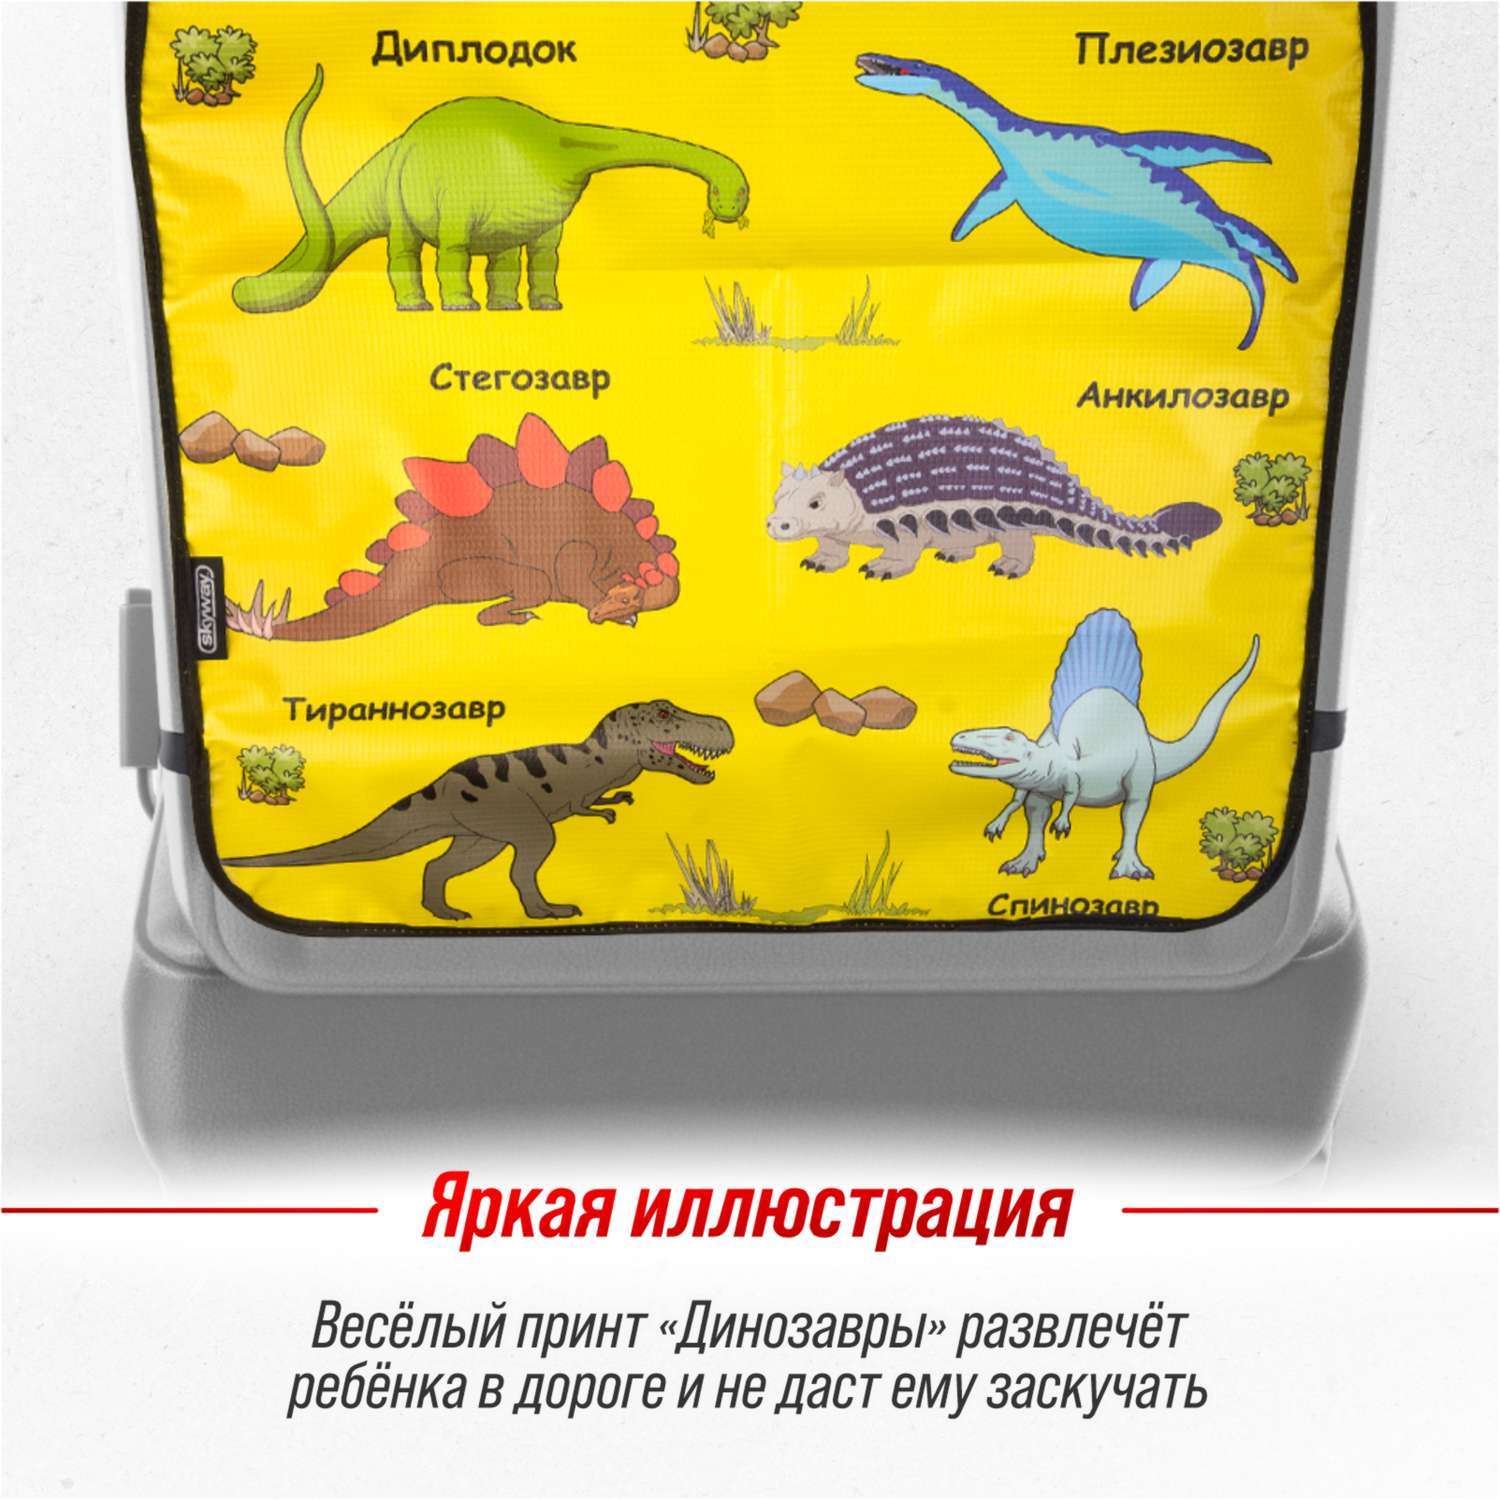 Защита спинки сиденья ПВХ SKYWAY 60*50см Динозавры желтый фон - фото 6